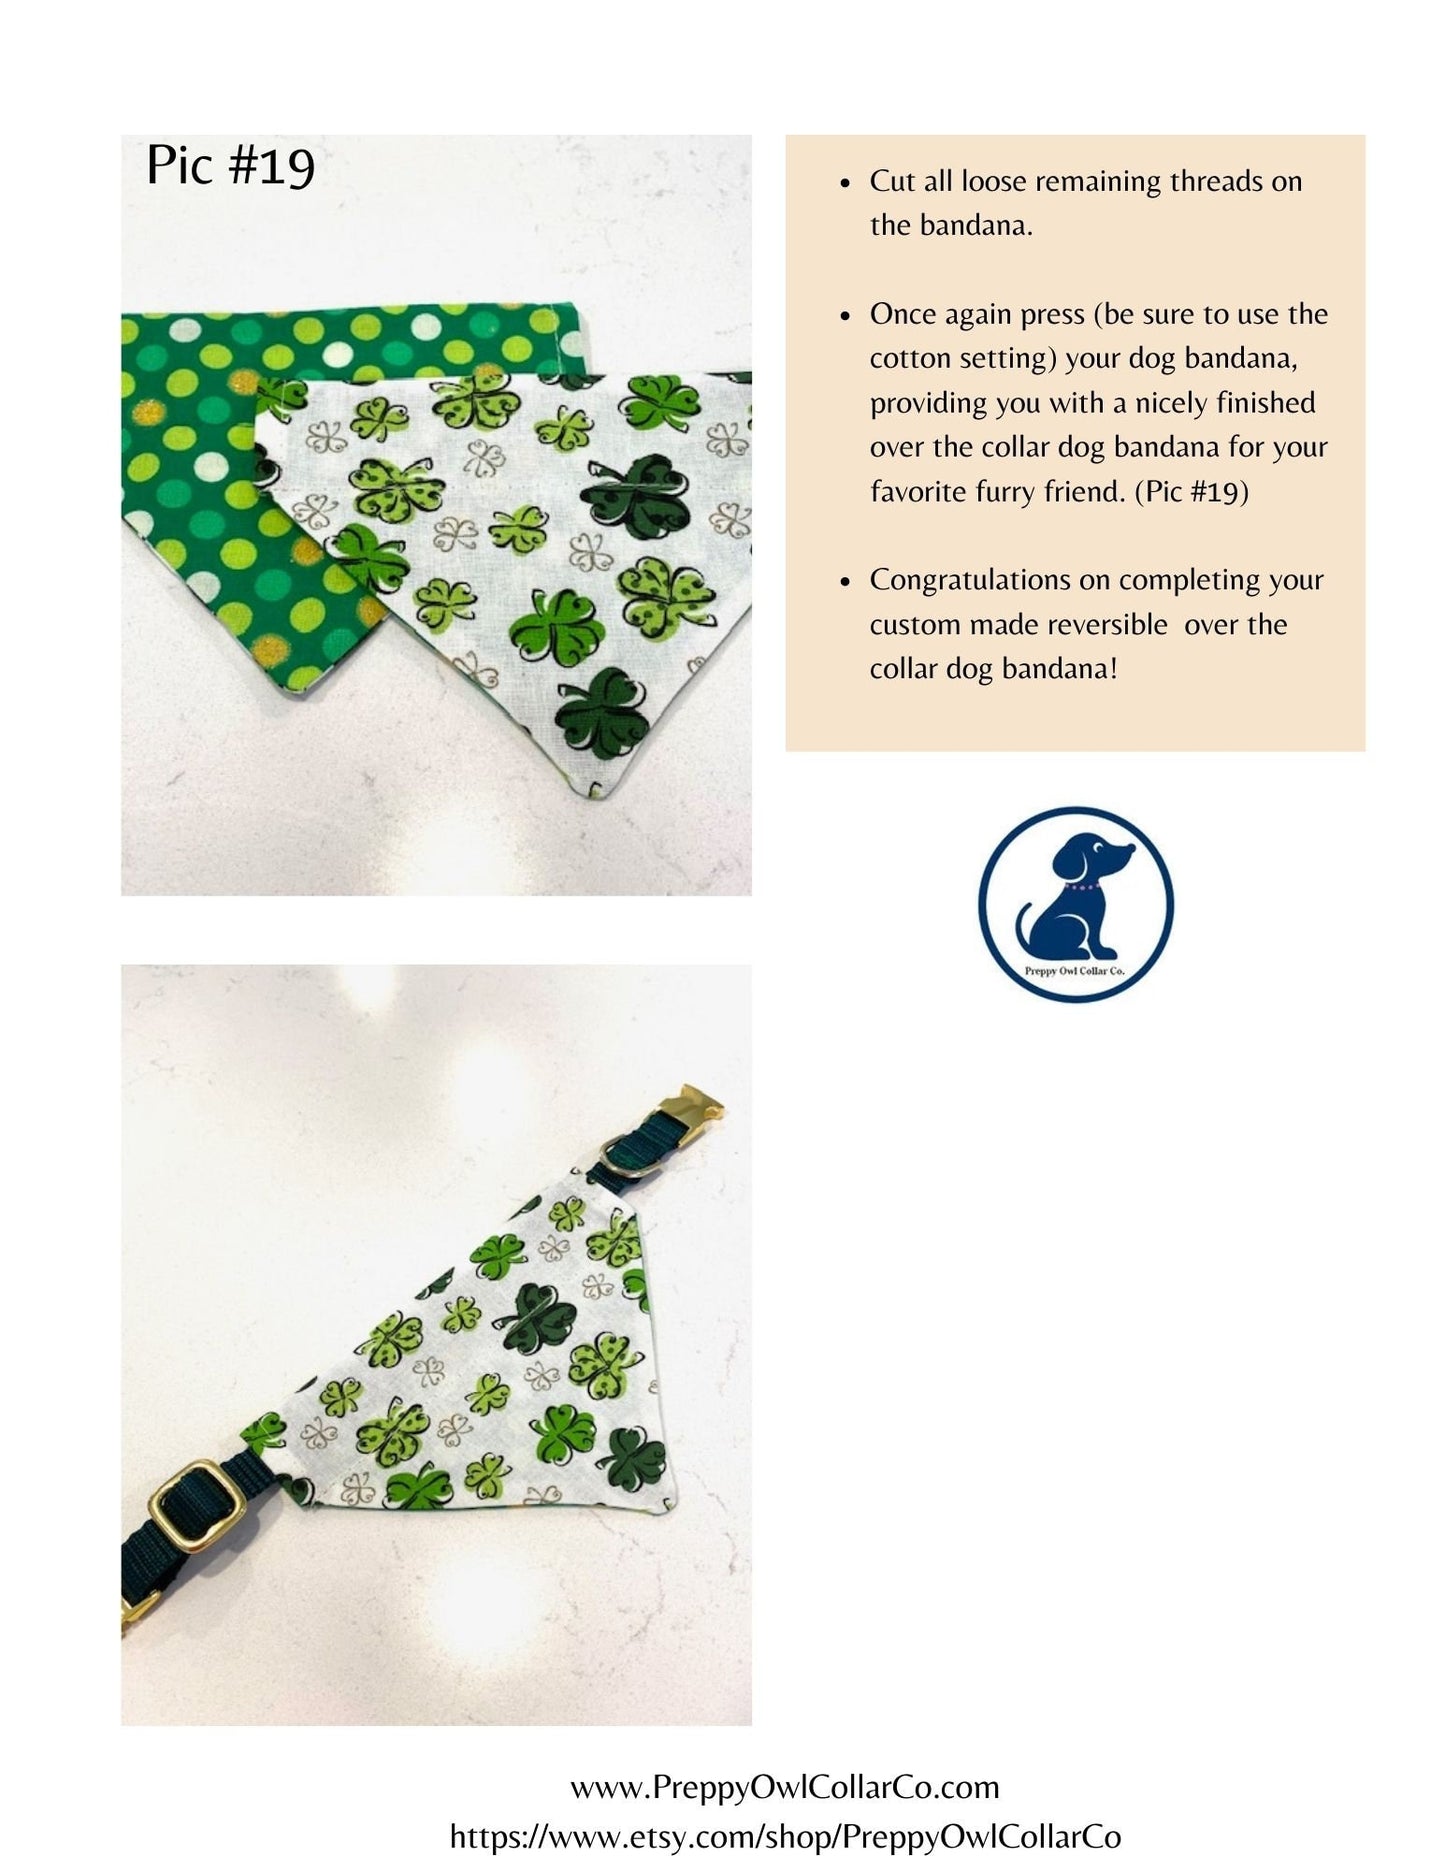 Reversible Over the Collar Dog Bandana Sewing Pattern, DIY Dog Bandana, Dog Bandana Pattern PDF, Make Dog Bandanas - 4 Sizes